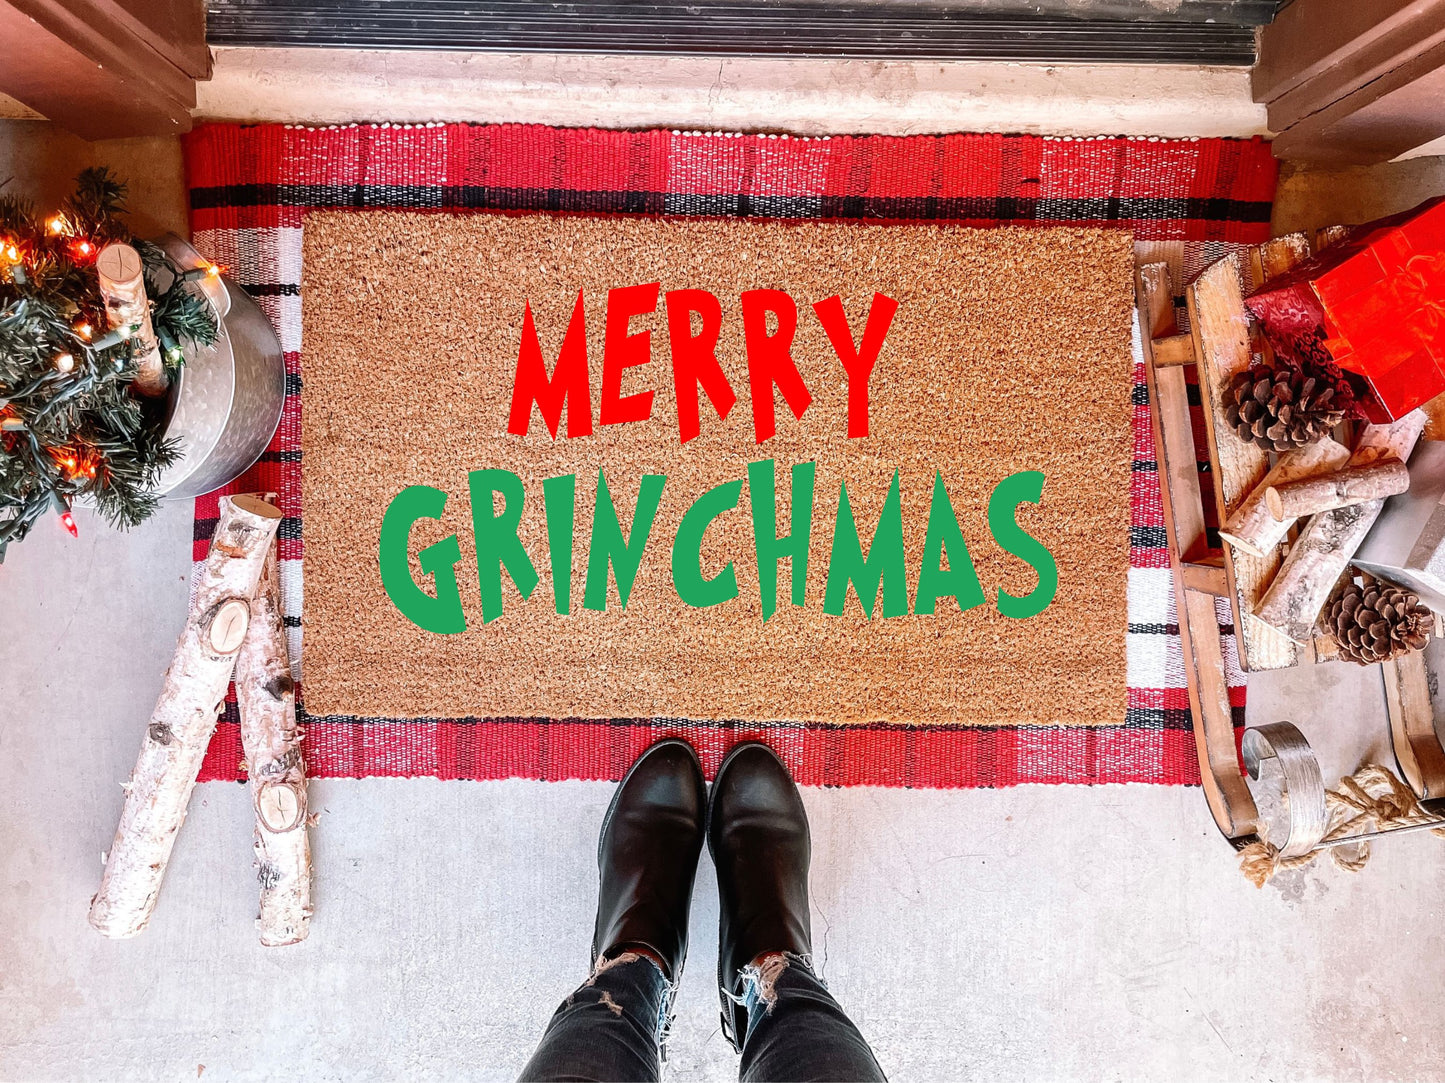 Merry Grinchmas Doormat